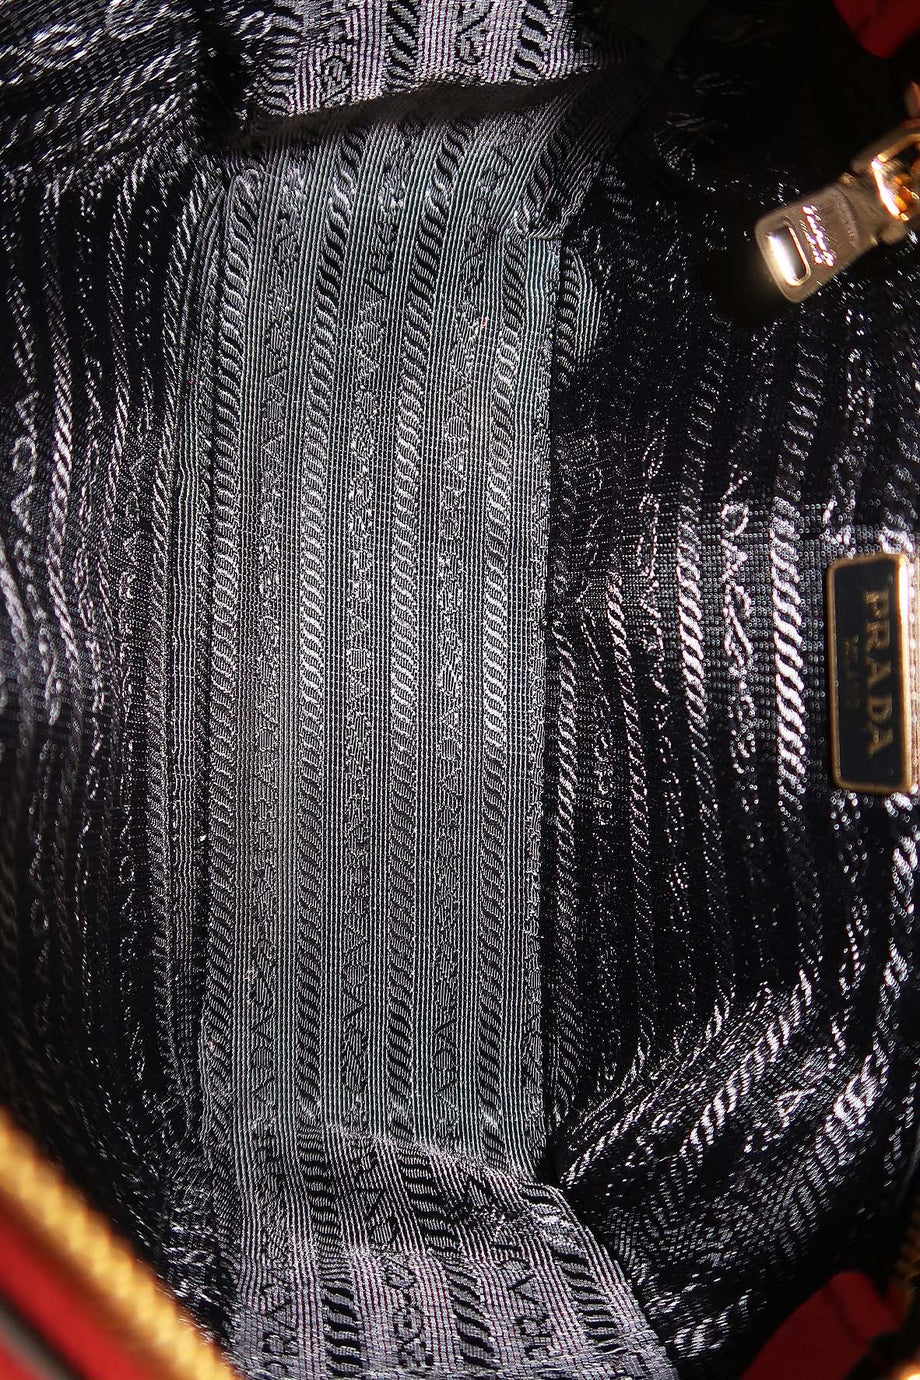 Black Prada Saffiano Lux Camera Bag – Designer Revival